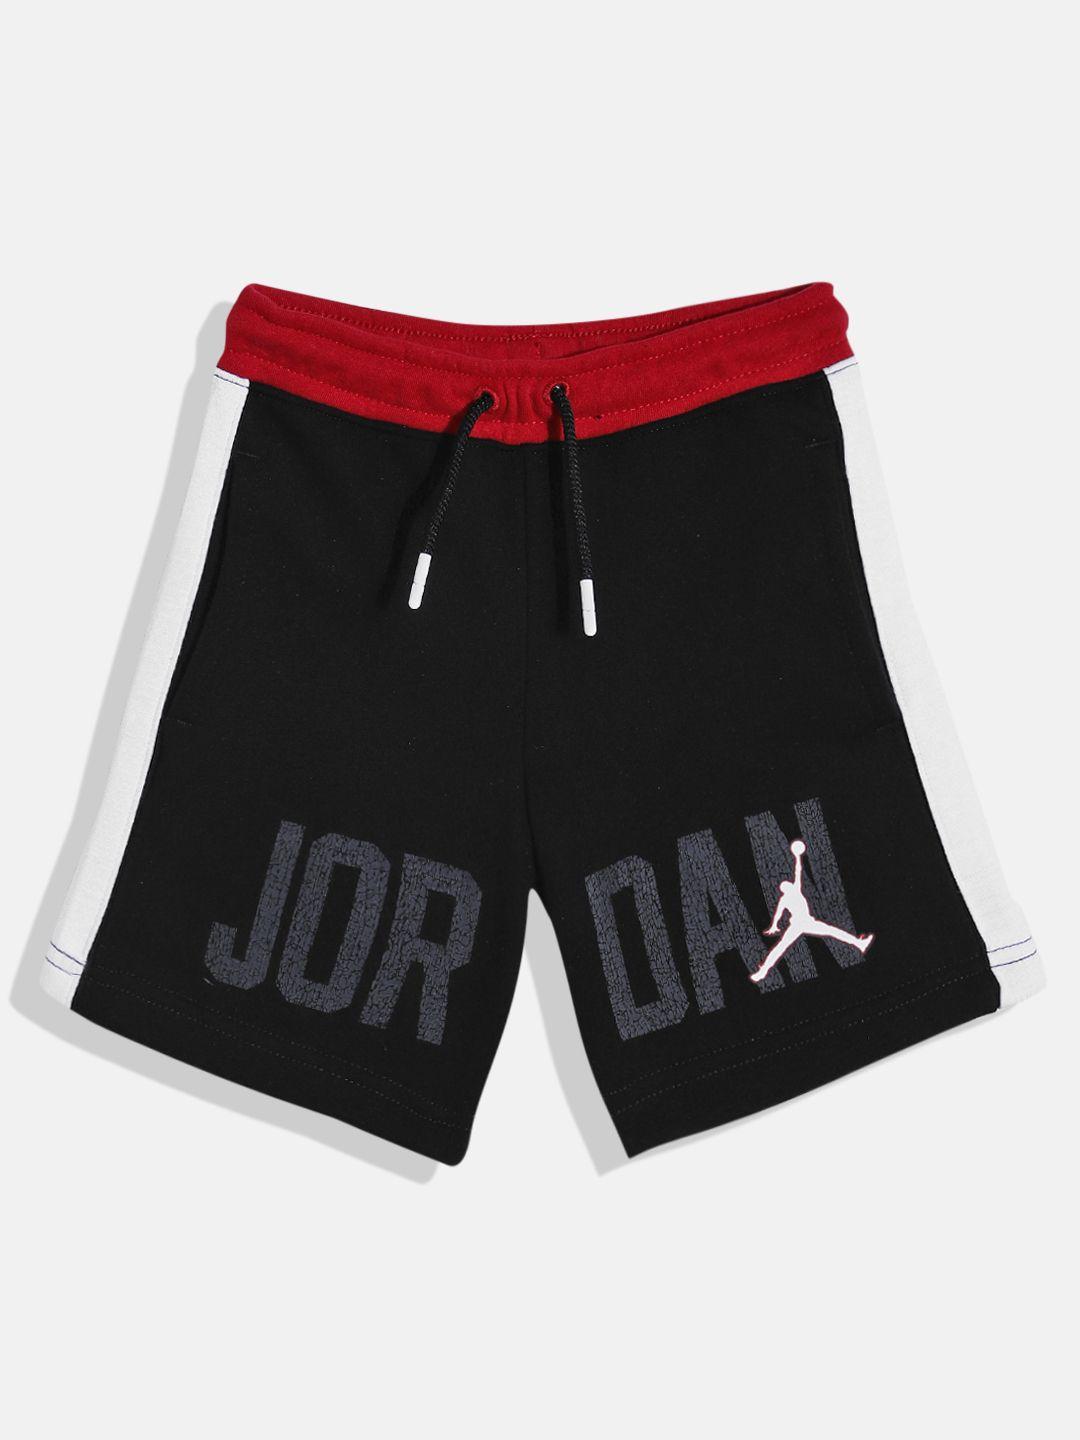 jordan gym 23 blocked typography printed shorts